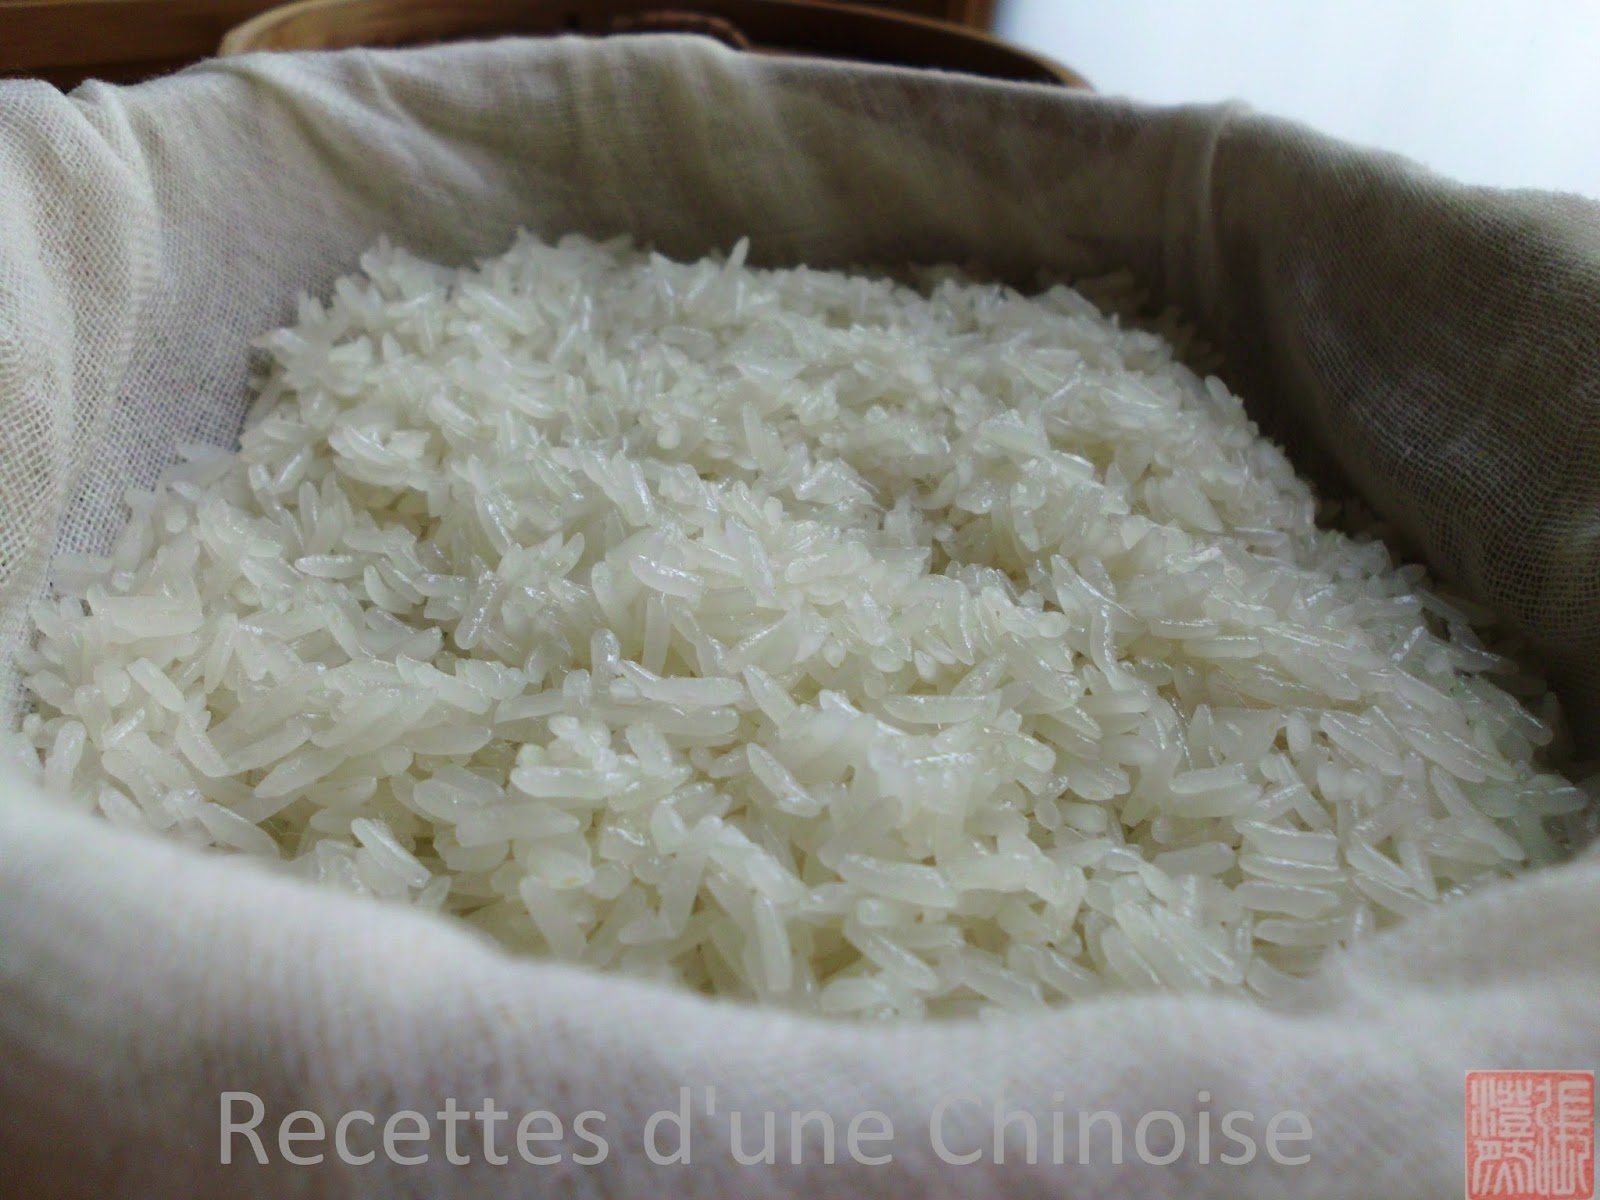 Recettes d'une Chinoise: Comment faire cuire du sticky rice (riz gluant) ?